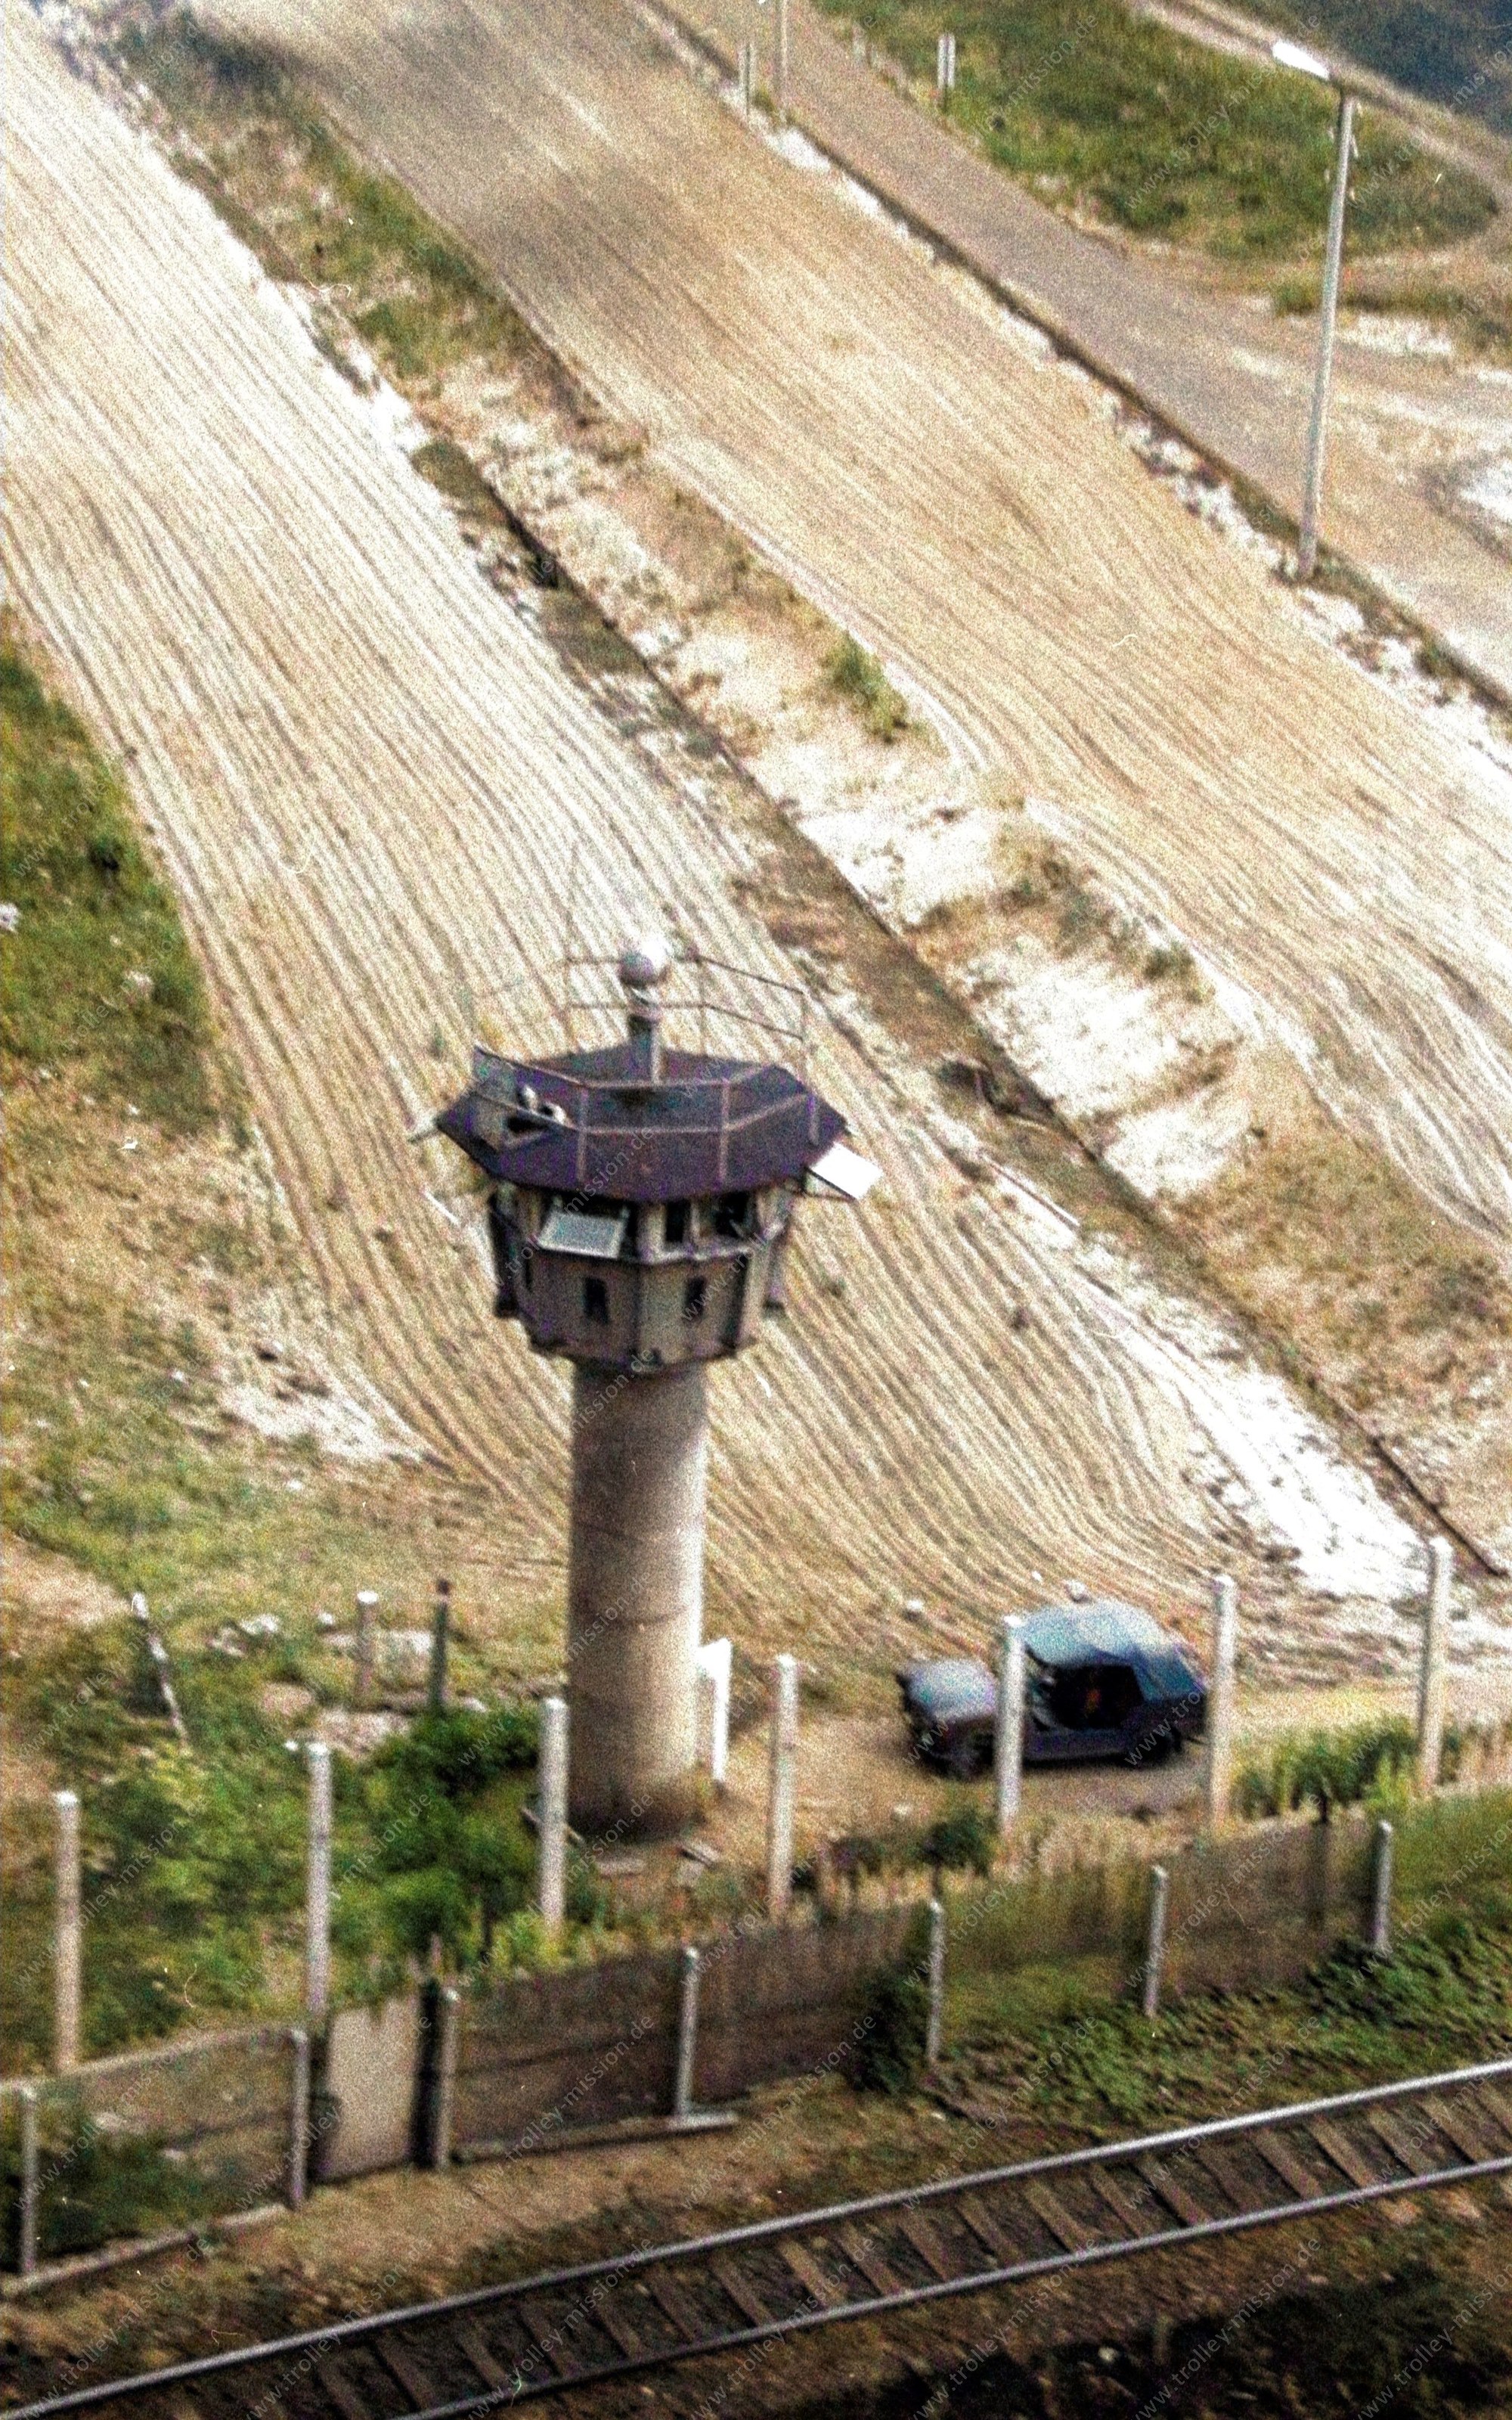 Die Luftaufnahme entstand am 9. März 1982 an den Grenzbefestigungsanlagen der Exklave Steinstücken. Auf dem Luftbild ist der niedrig gehaltene BT-9-Wachturm der Grenztruppen der DDR mit nur sechs Ringelementen zu sehen.